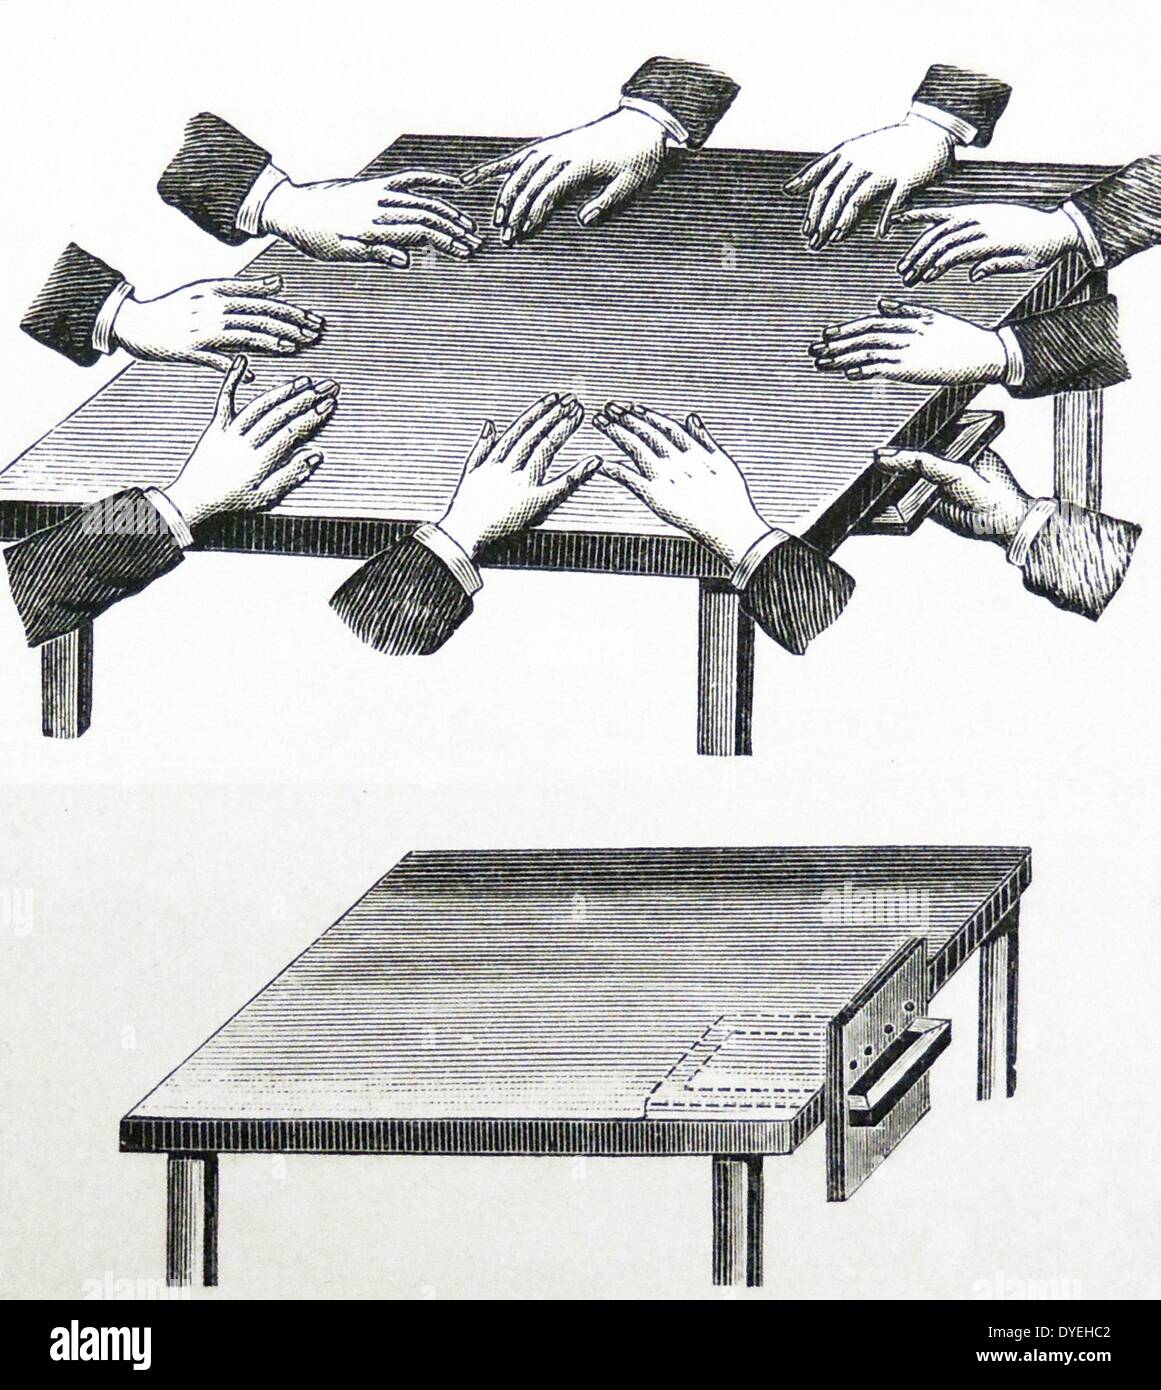 Geist schreiben: Anordnung der Hände auf den Tisch, um Geist schreiben auf einer Schiefertafel während einer spiritistischen Sitzung zu produzieren. Am unteren Rand zeigt eingereicht für das Schreiben durch das Medium angepasst. Gravur, 1895. Stockfoto